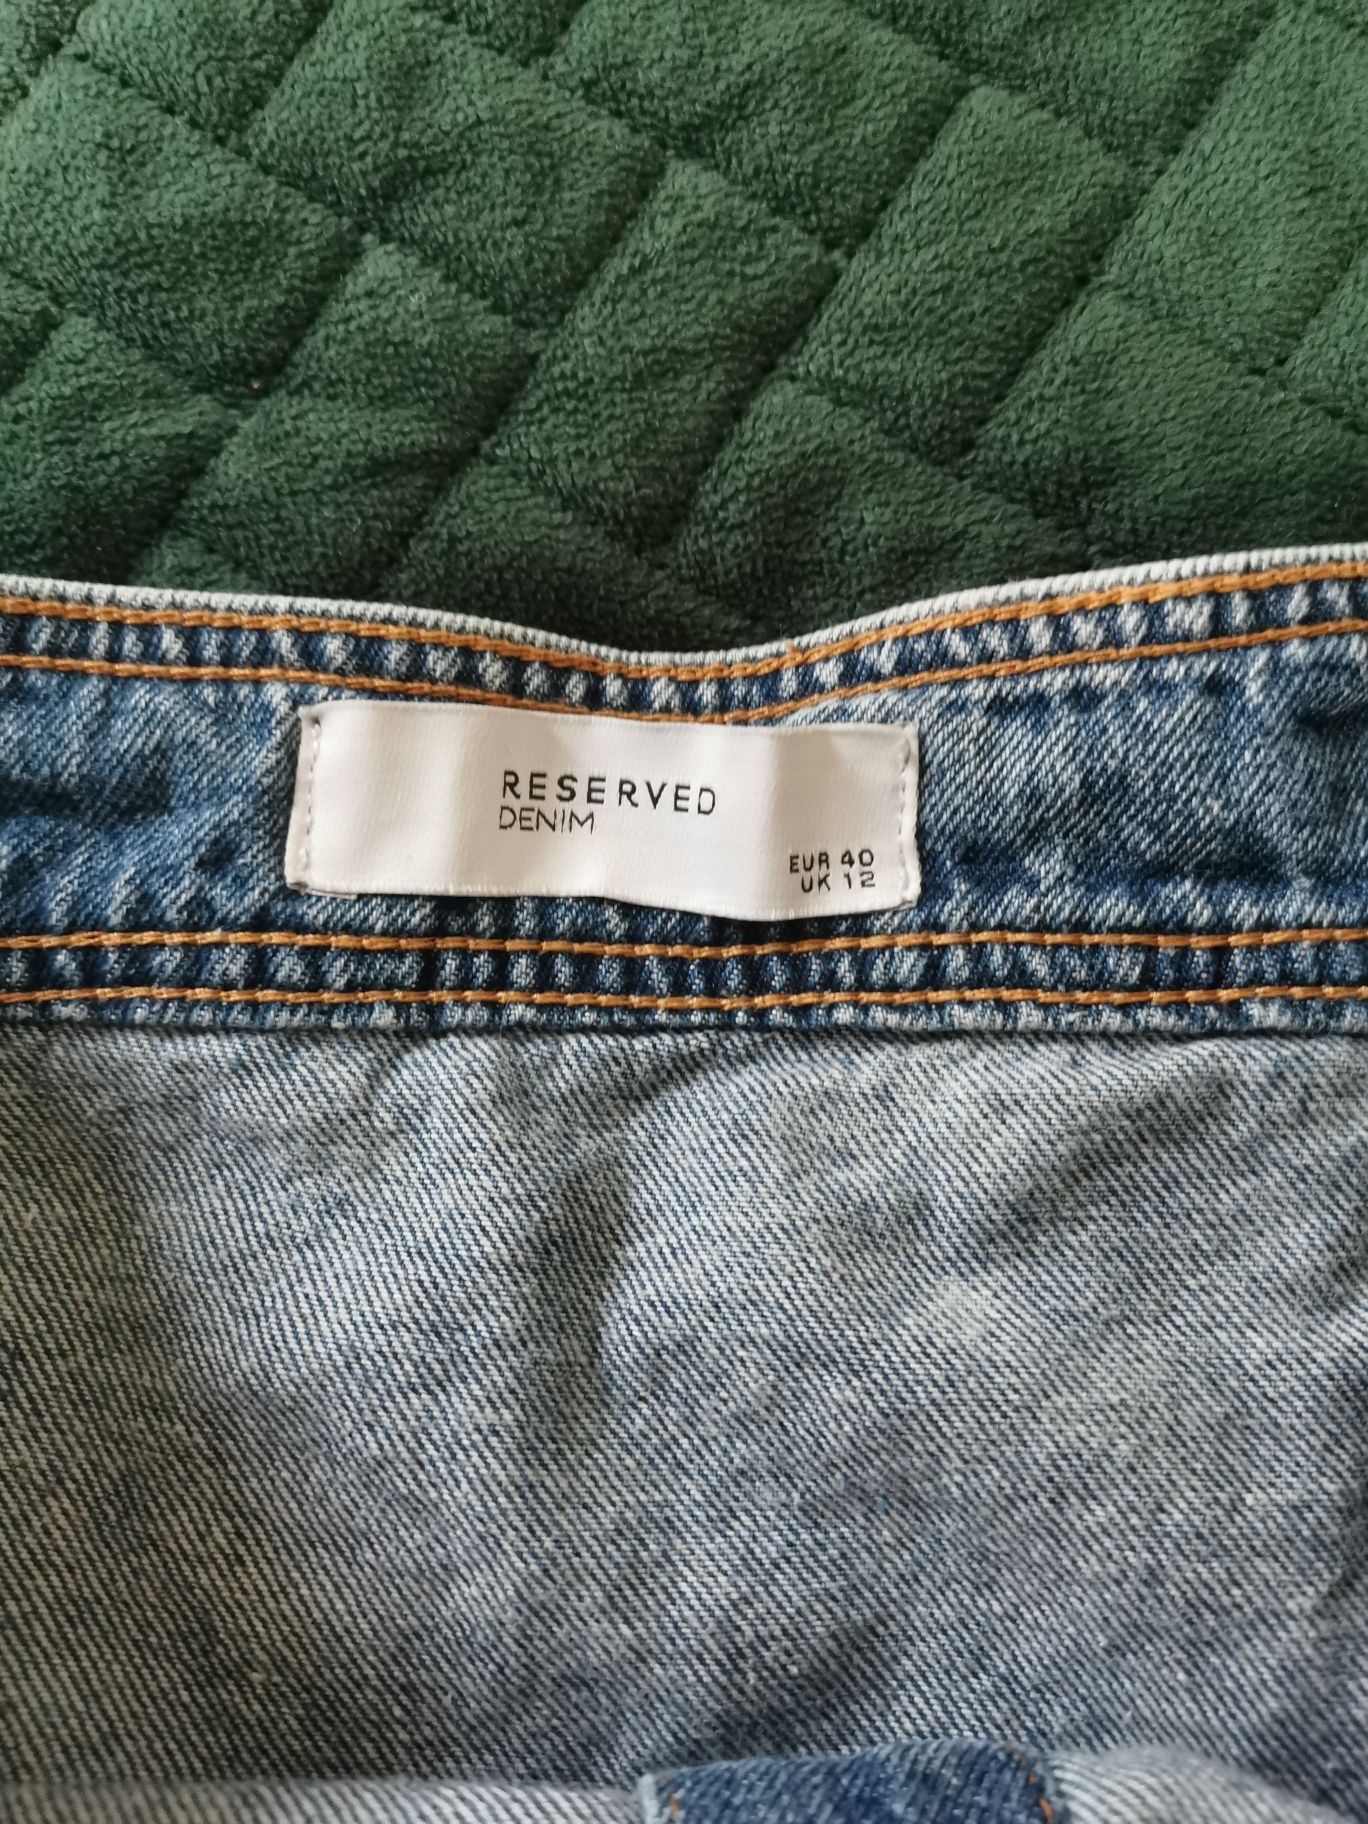 Spódnica jeansowa Reserved roz 40